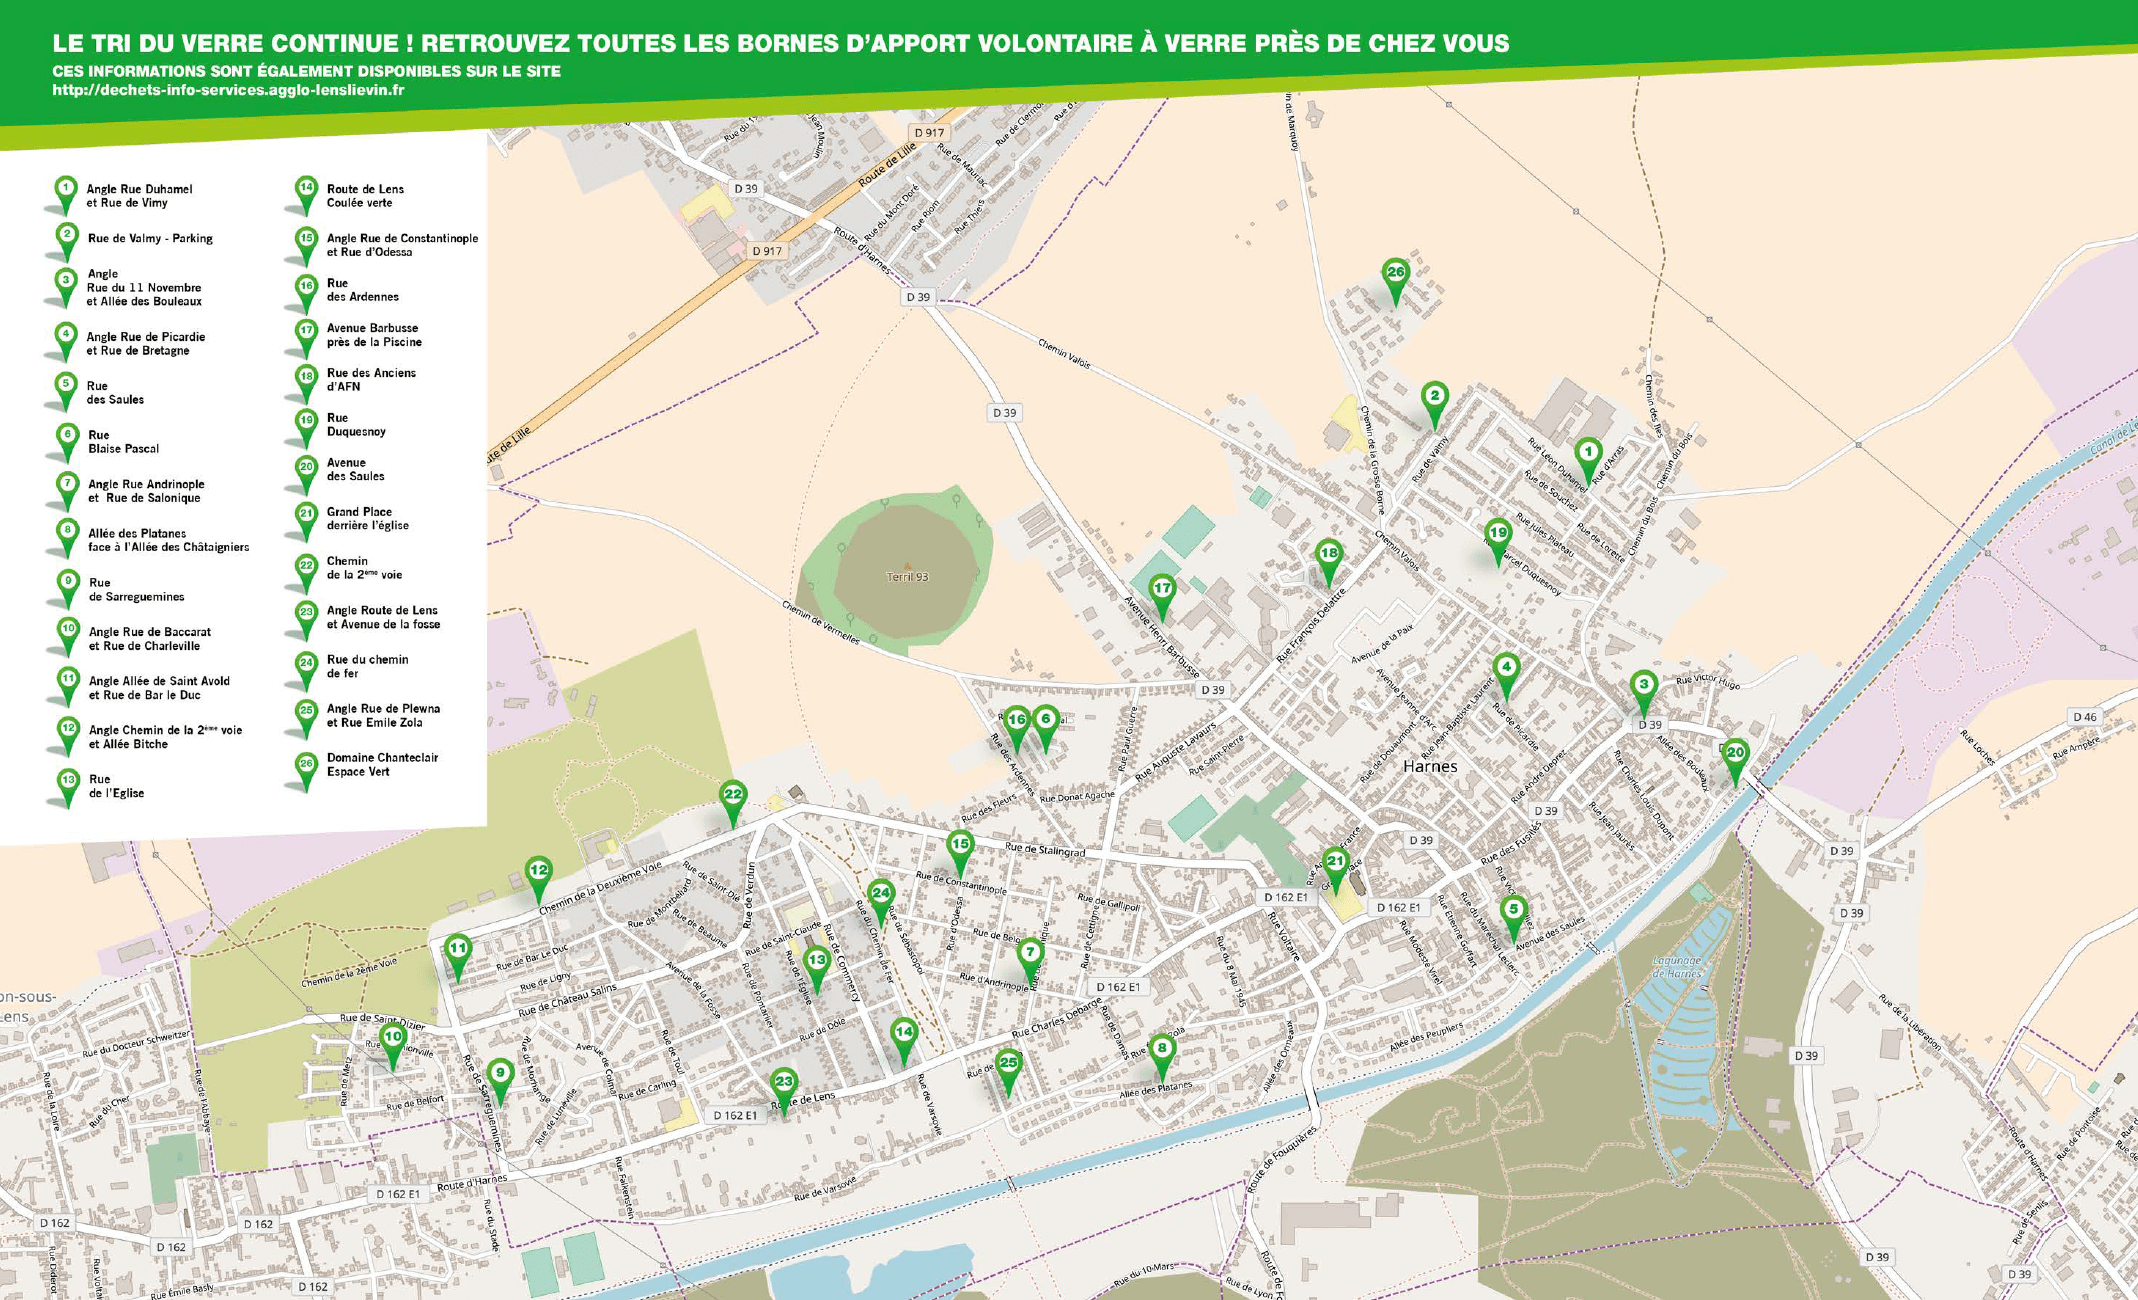 Carte de localisation des bornes installées dans notre ville